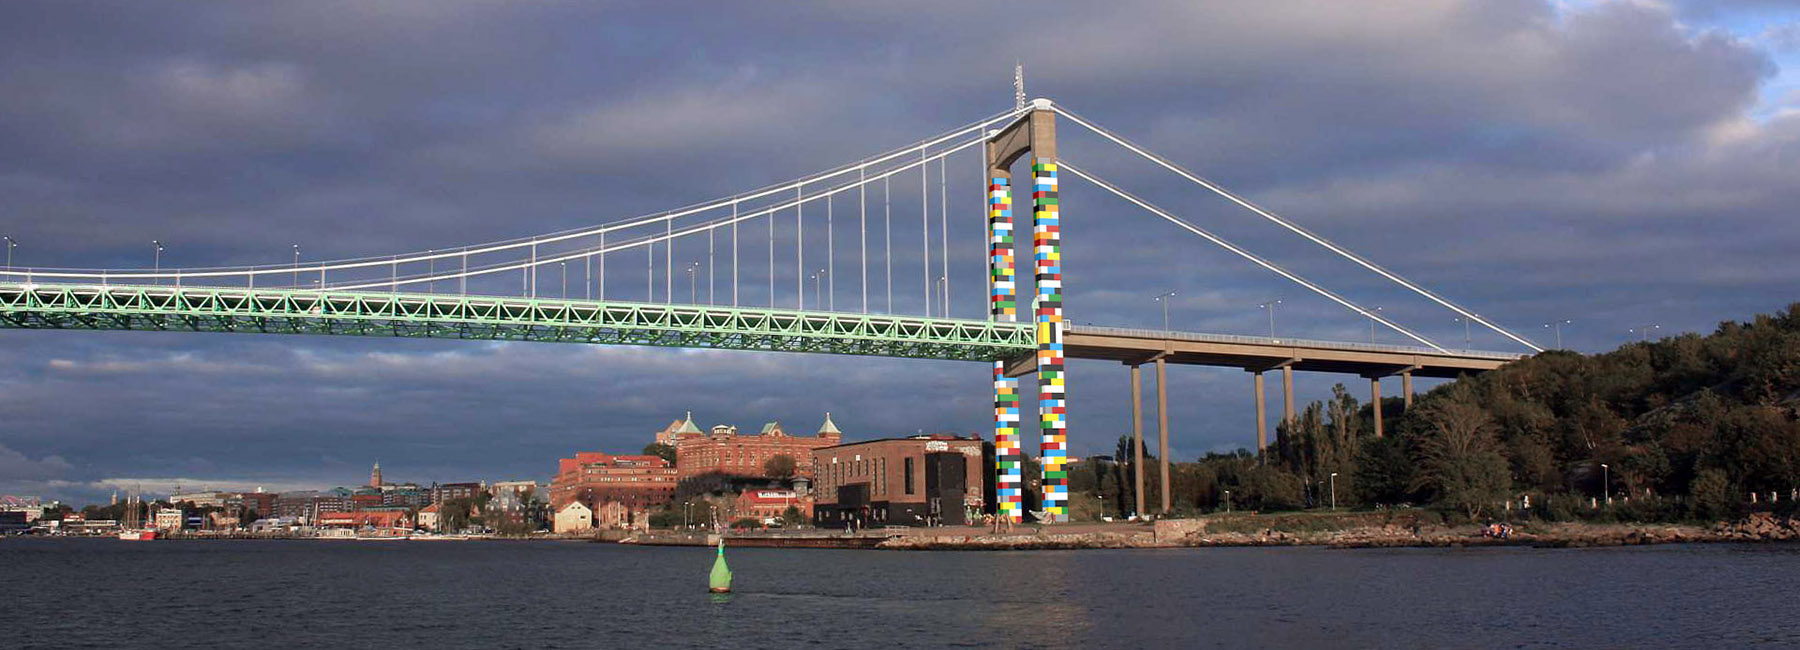 Lego Bridge1